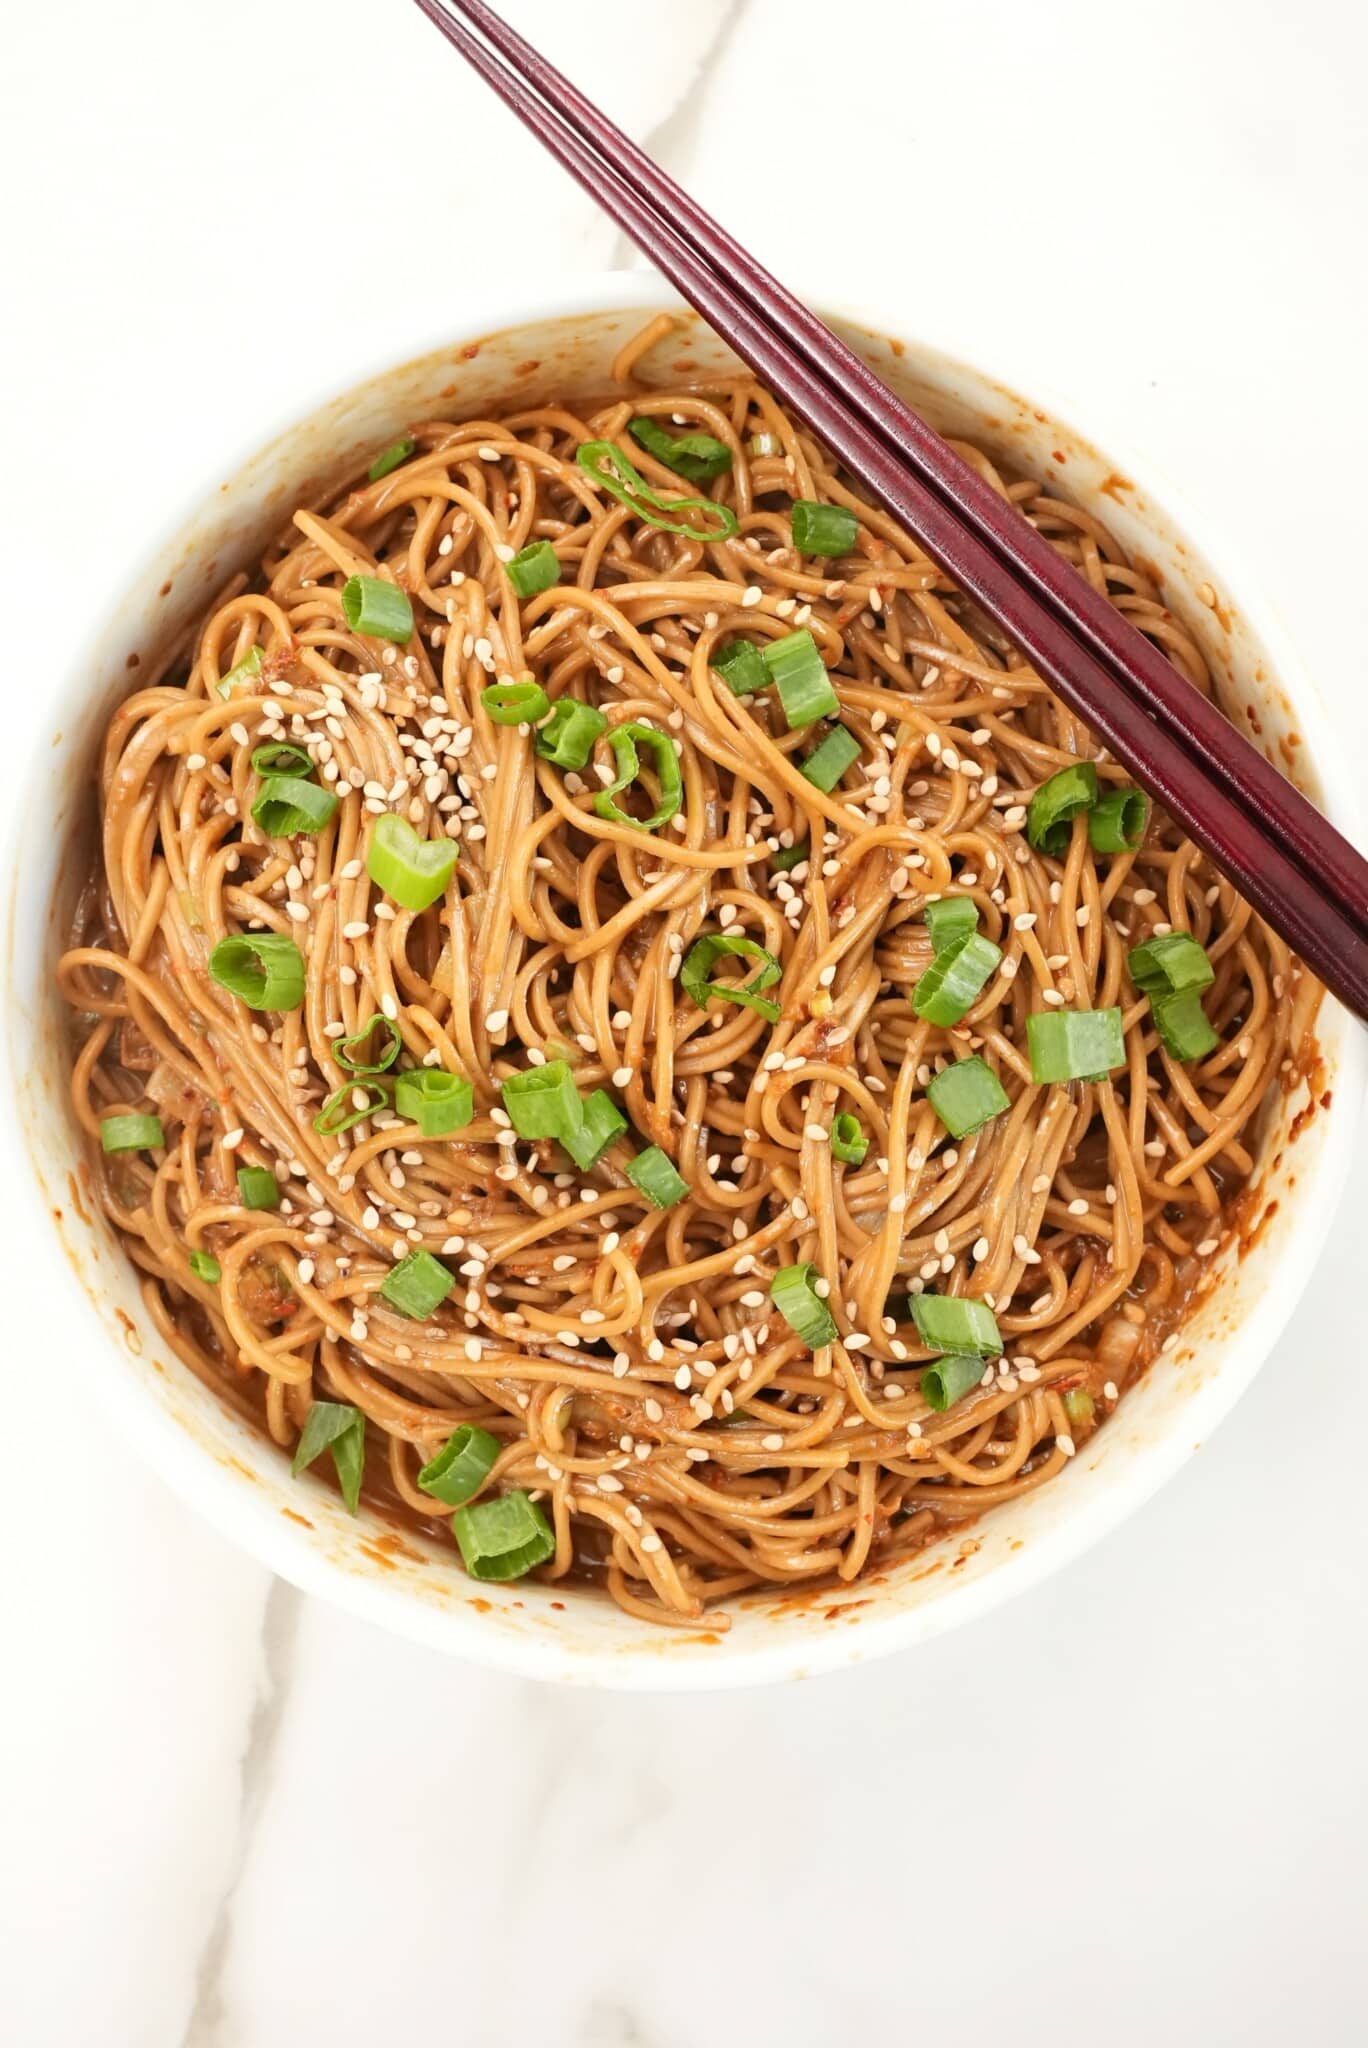 Basic Soba (Buckwheat) Noodles